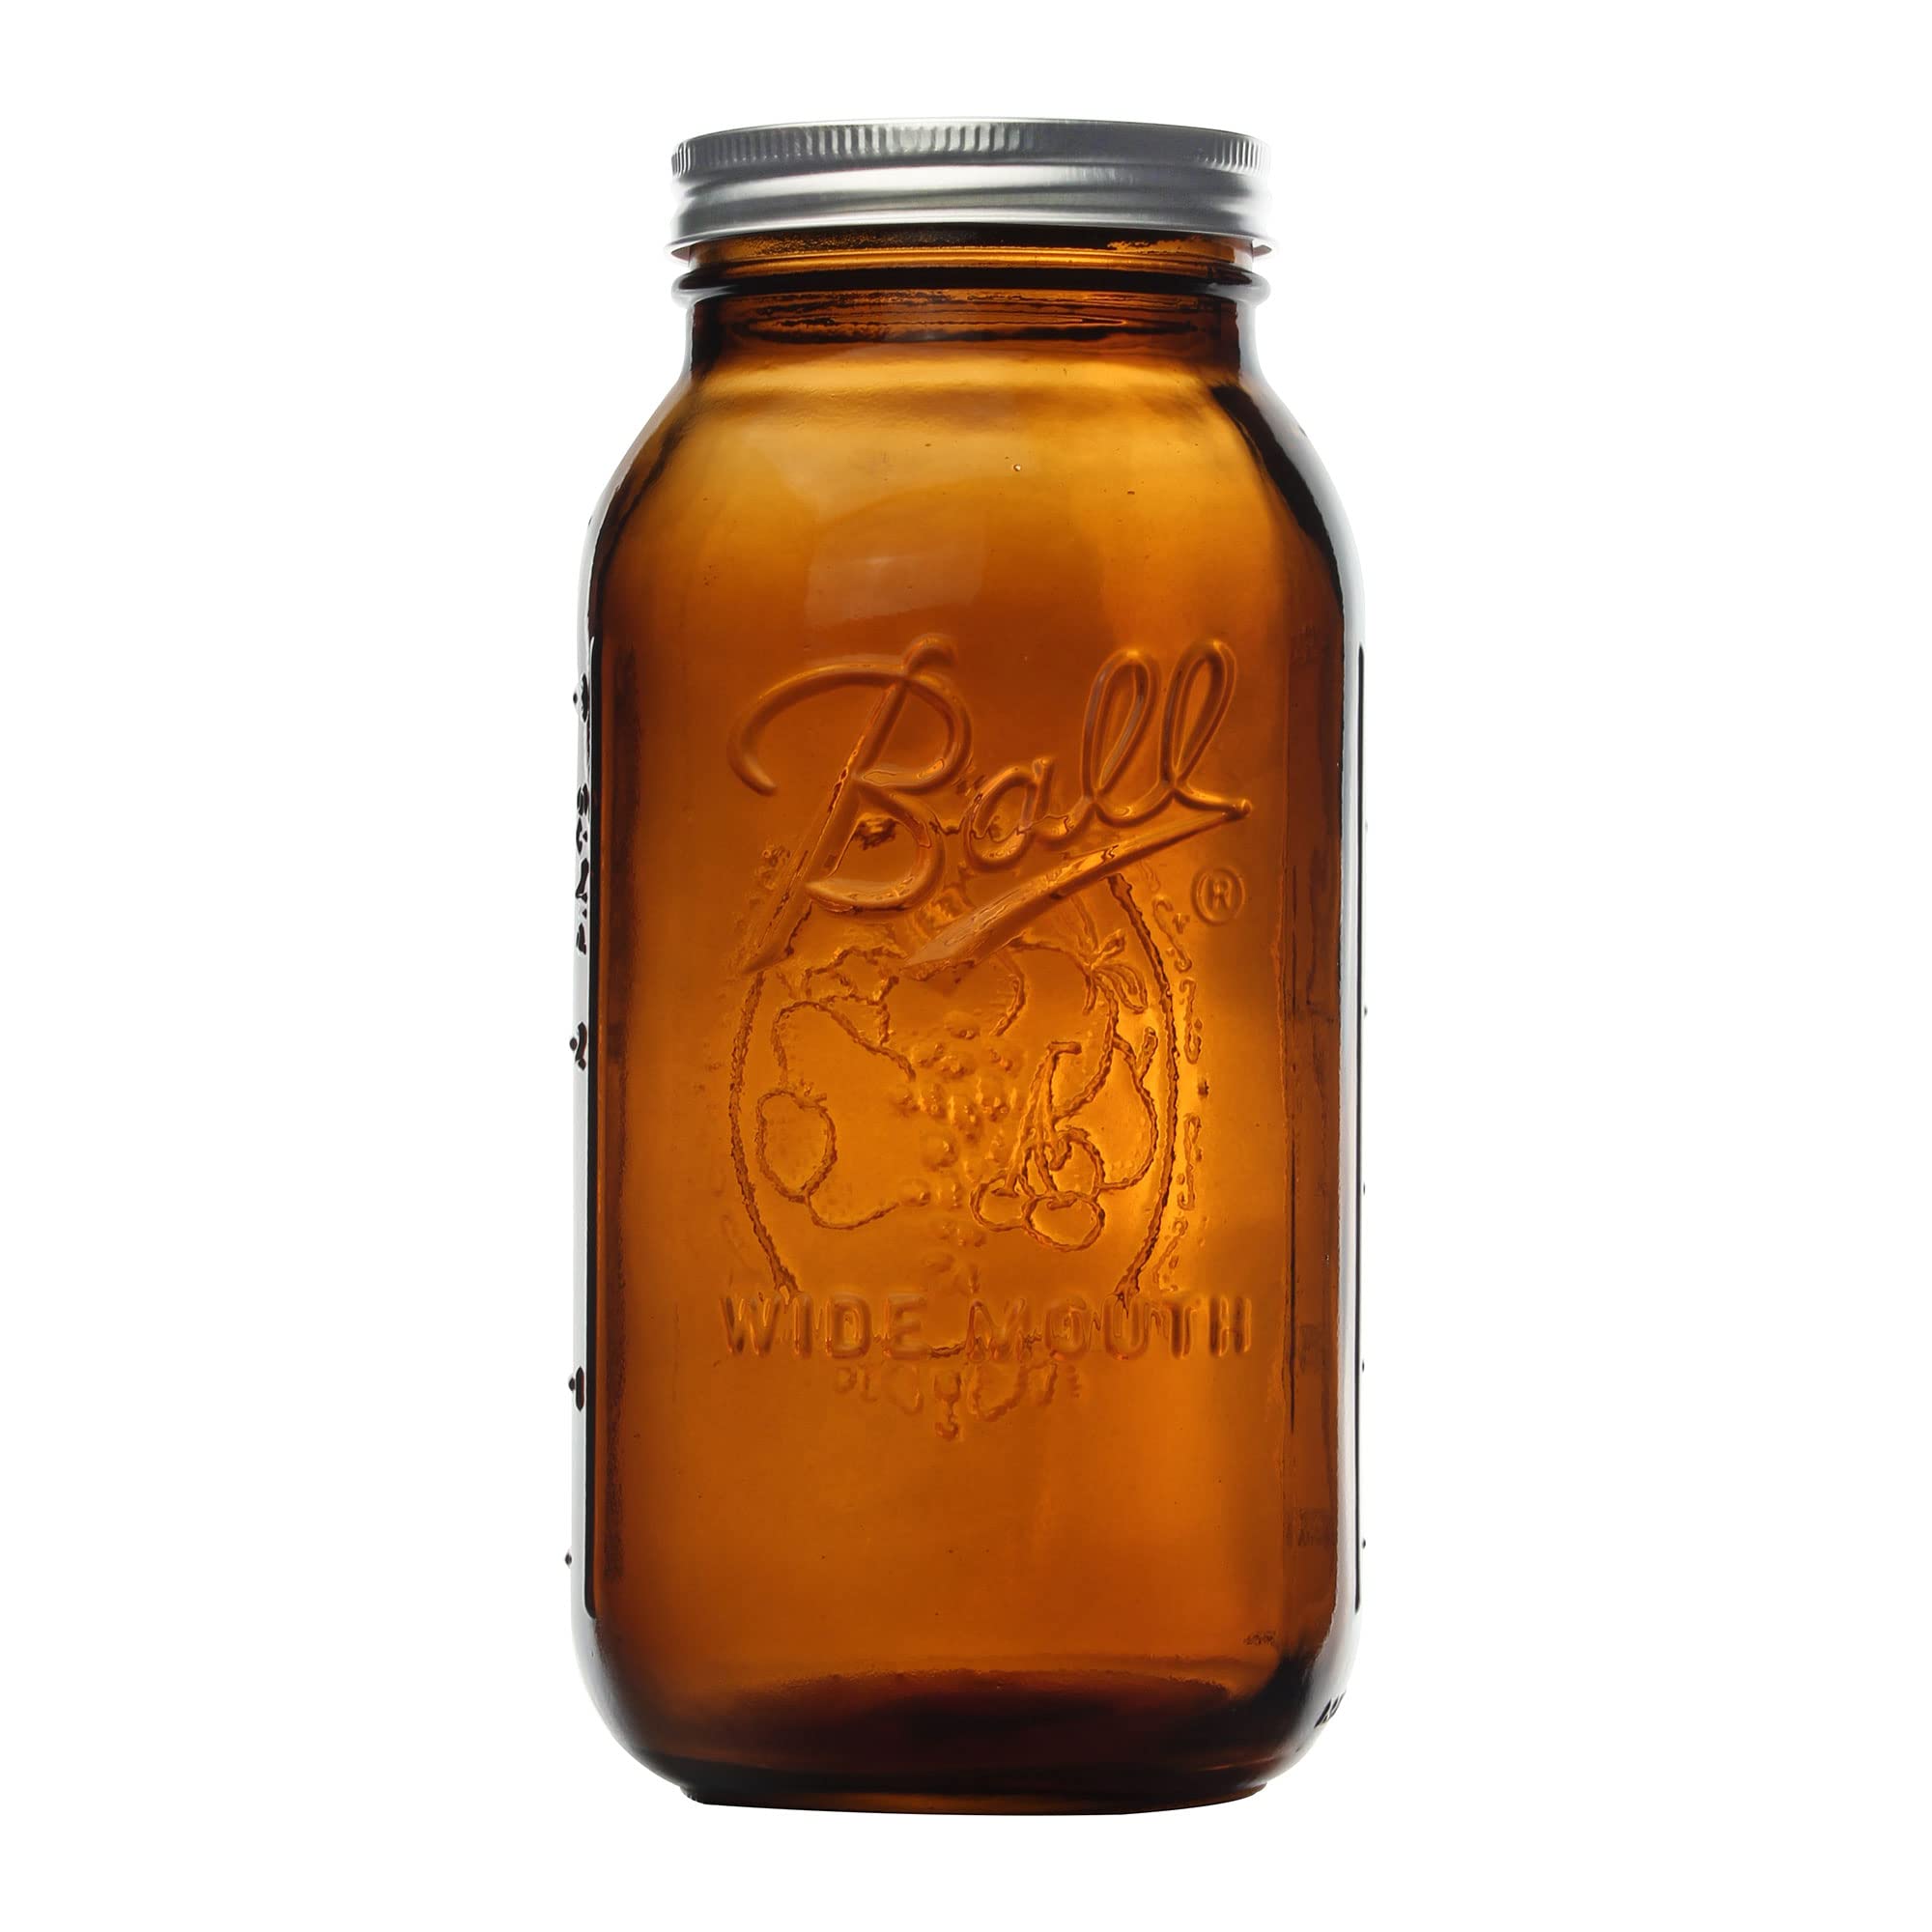 Jar Canning Ambr 1/2gal